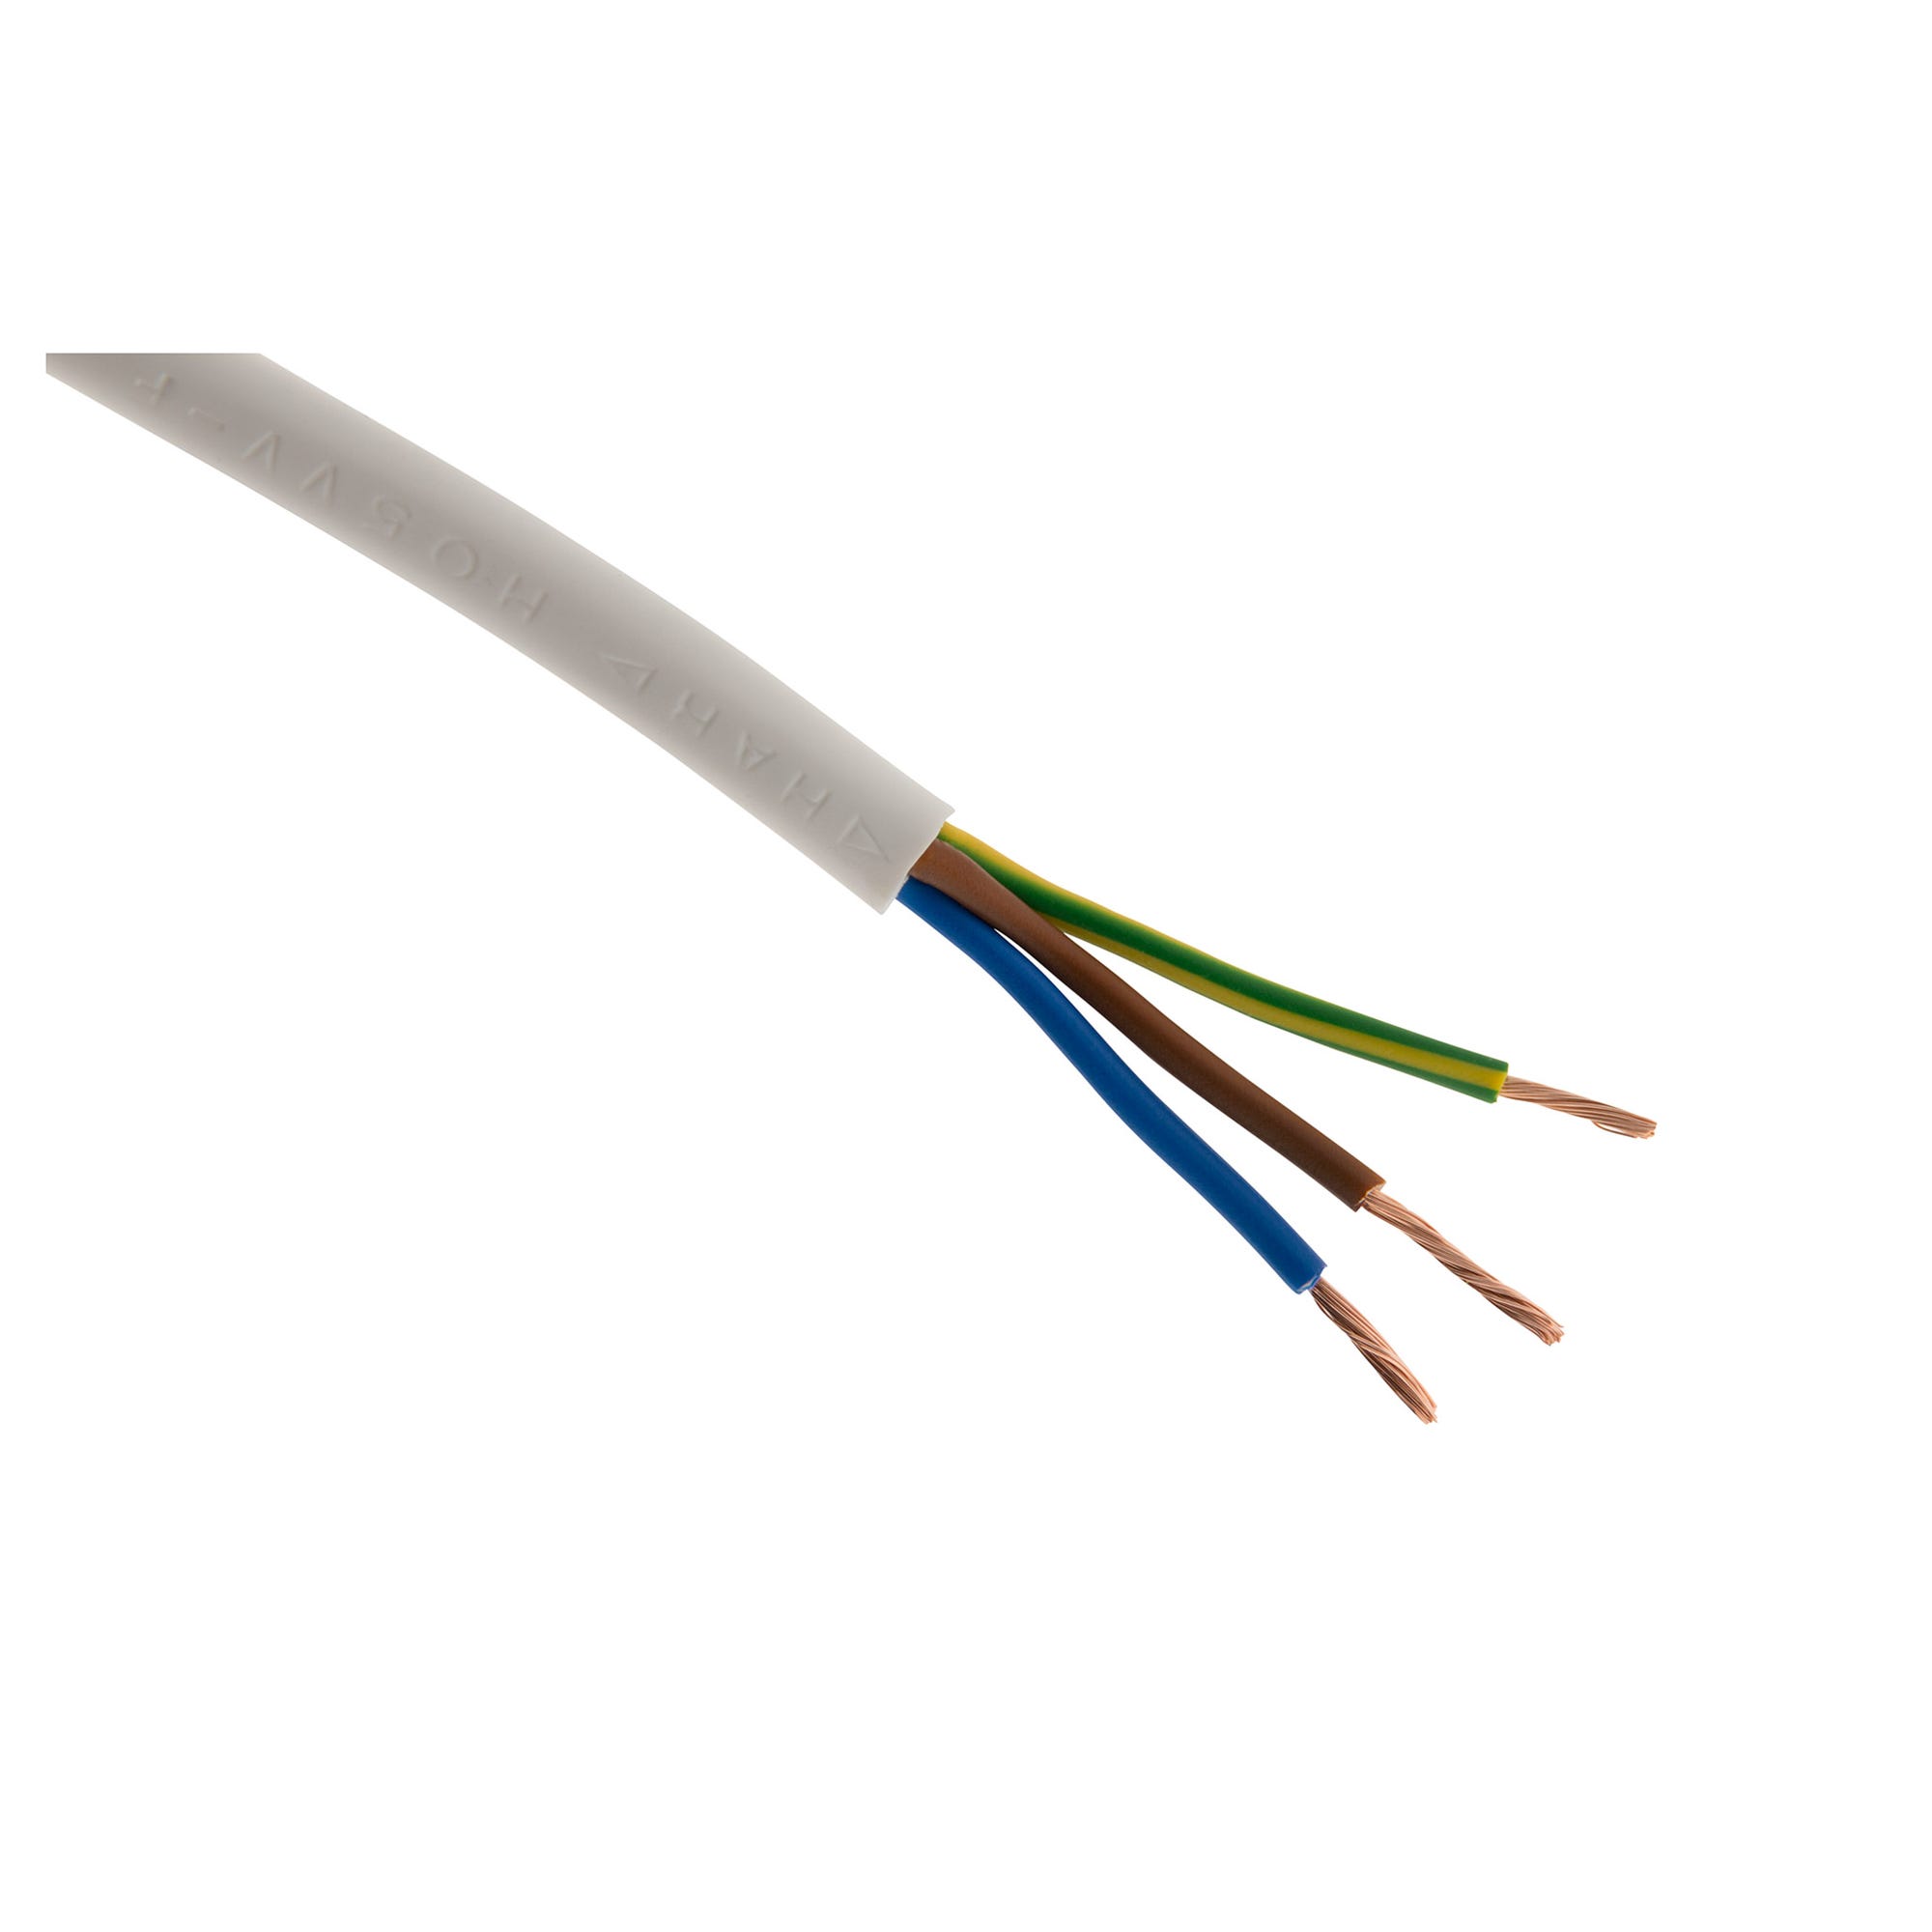 Câble d'alimentation électrique HO5VV-F 3G2,5mm² Blanc - 150m 0